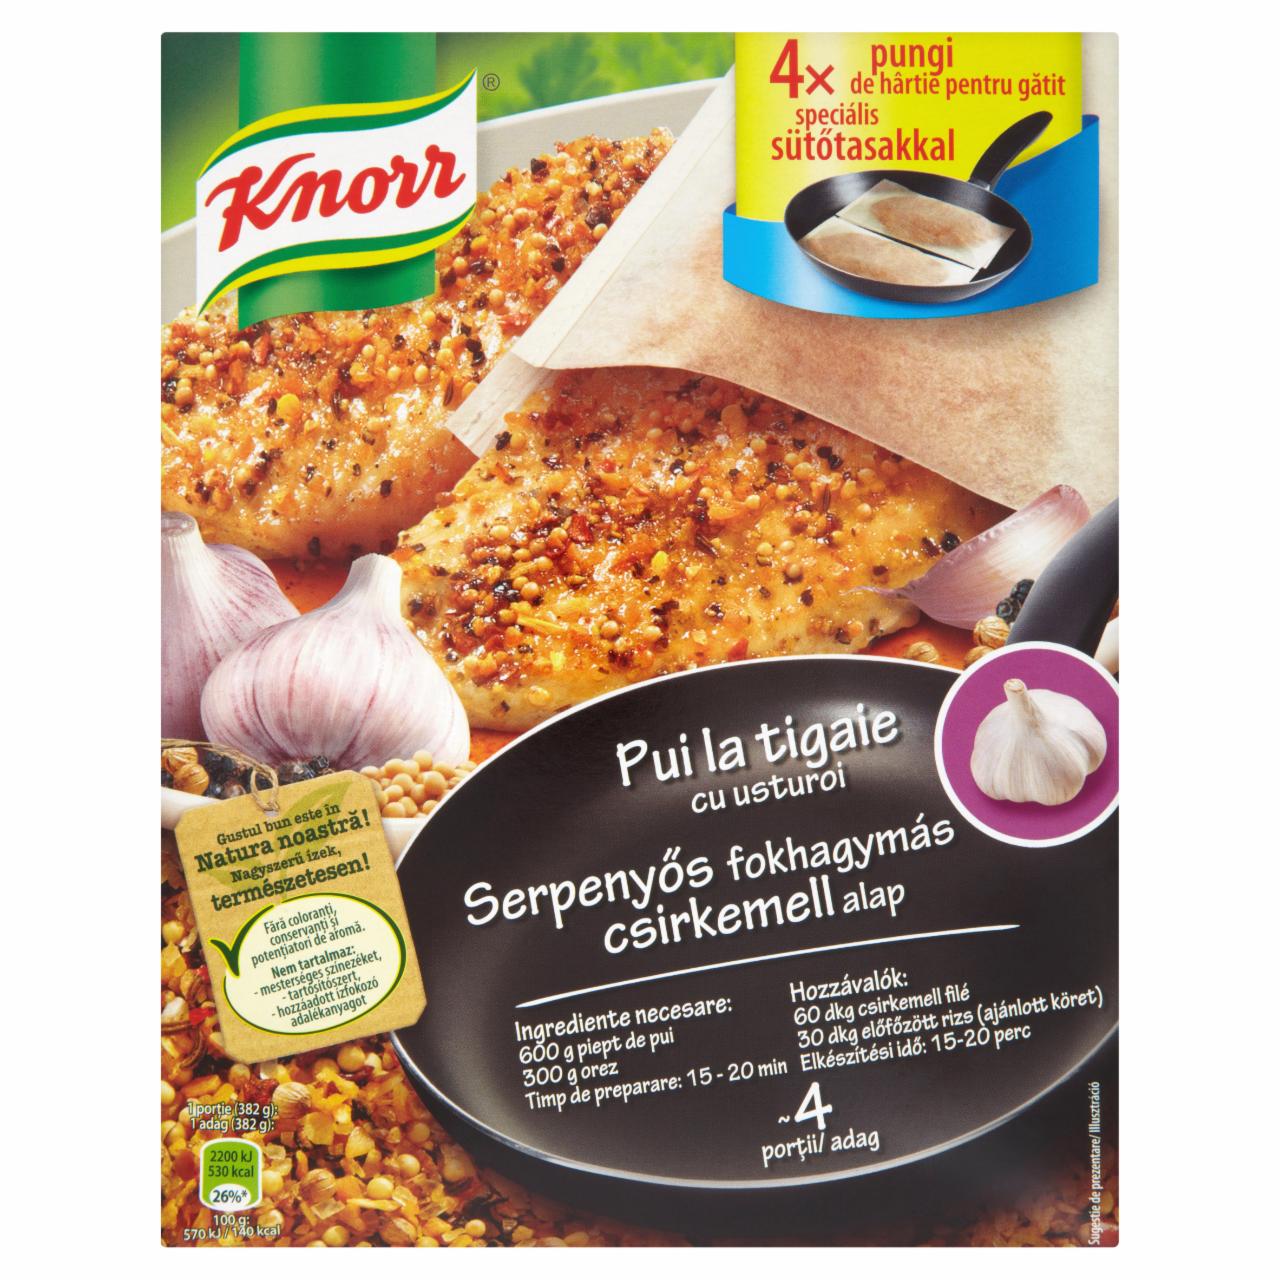 Képek - Knorr serpenyős fokhagymás csirkemell alap 20 g